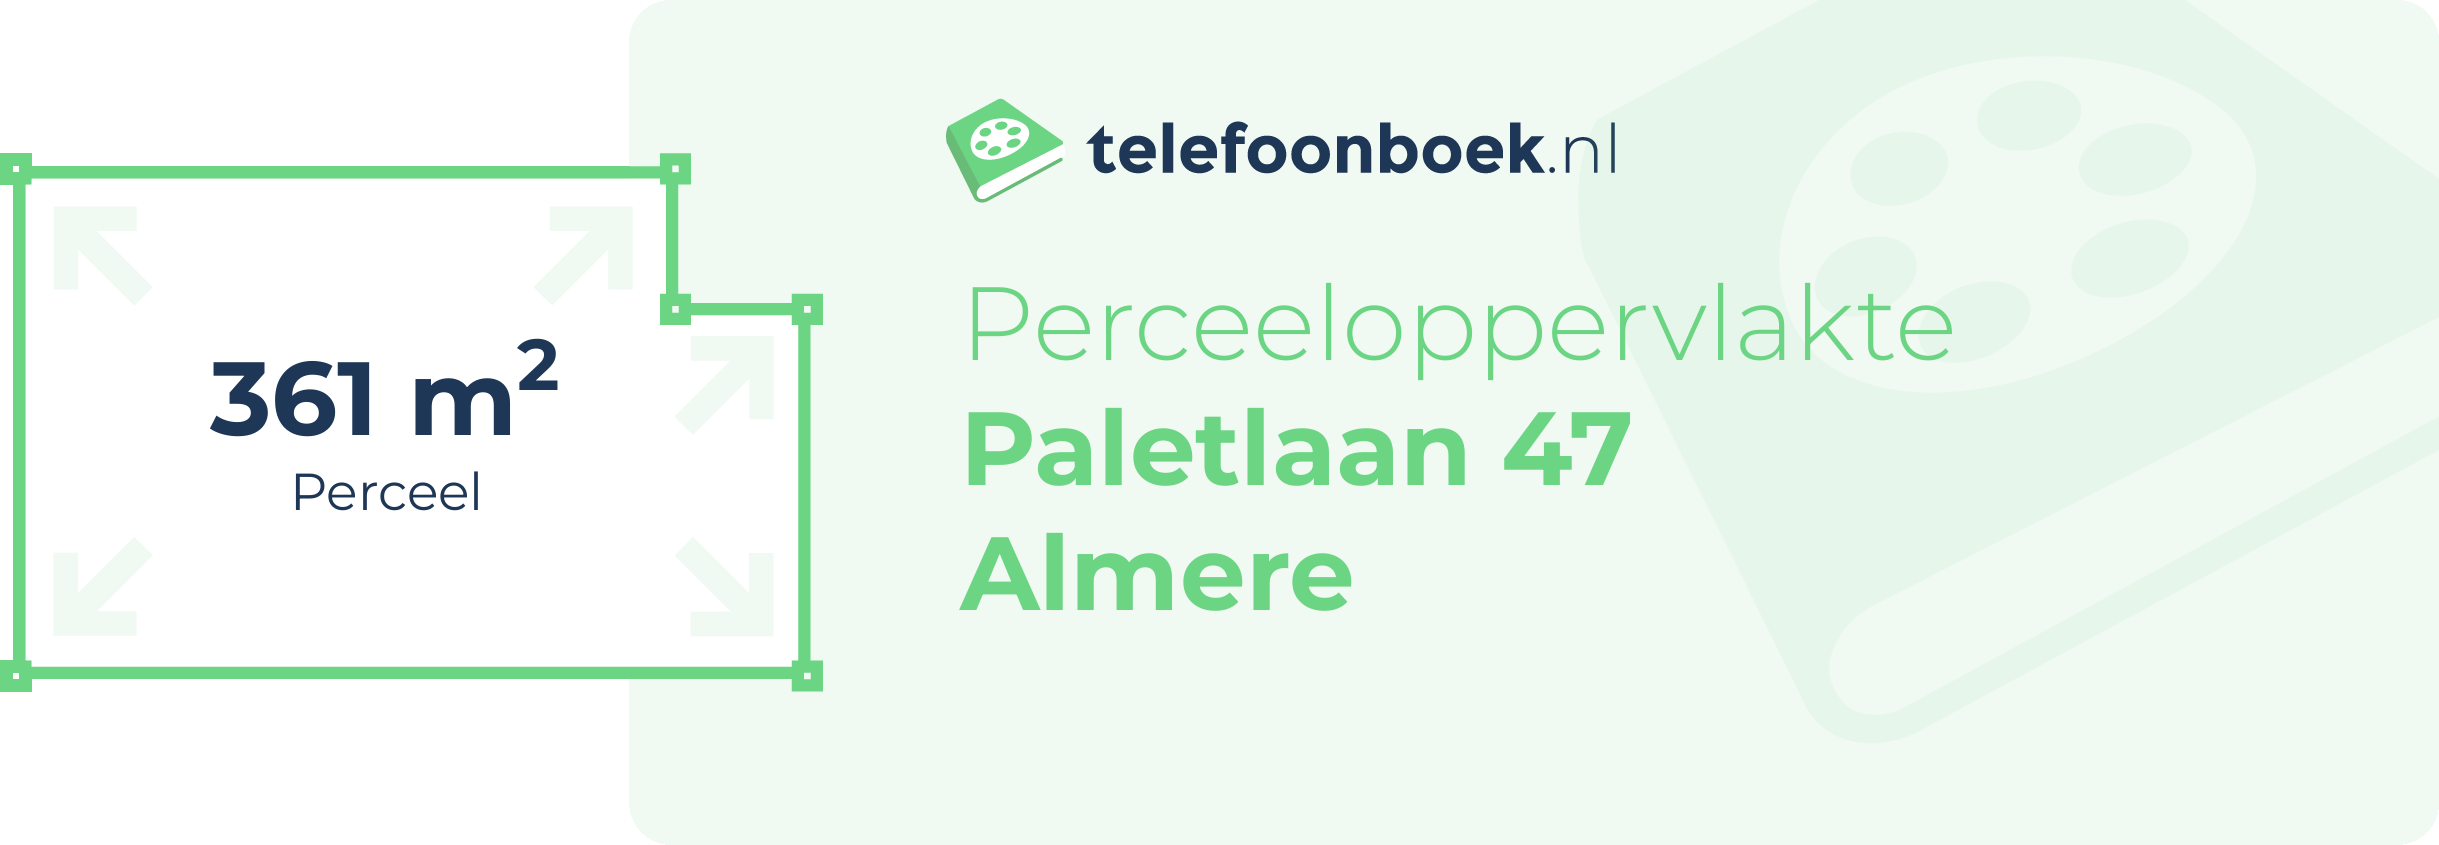 Perceeloppervlakte Paletlaan 47 Almere